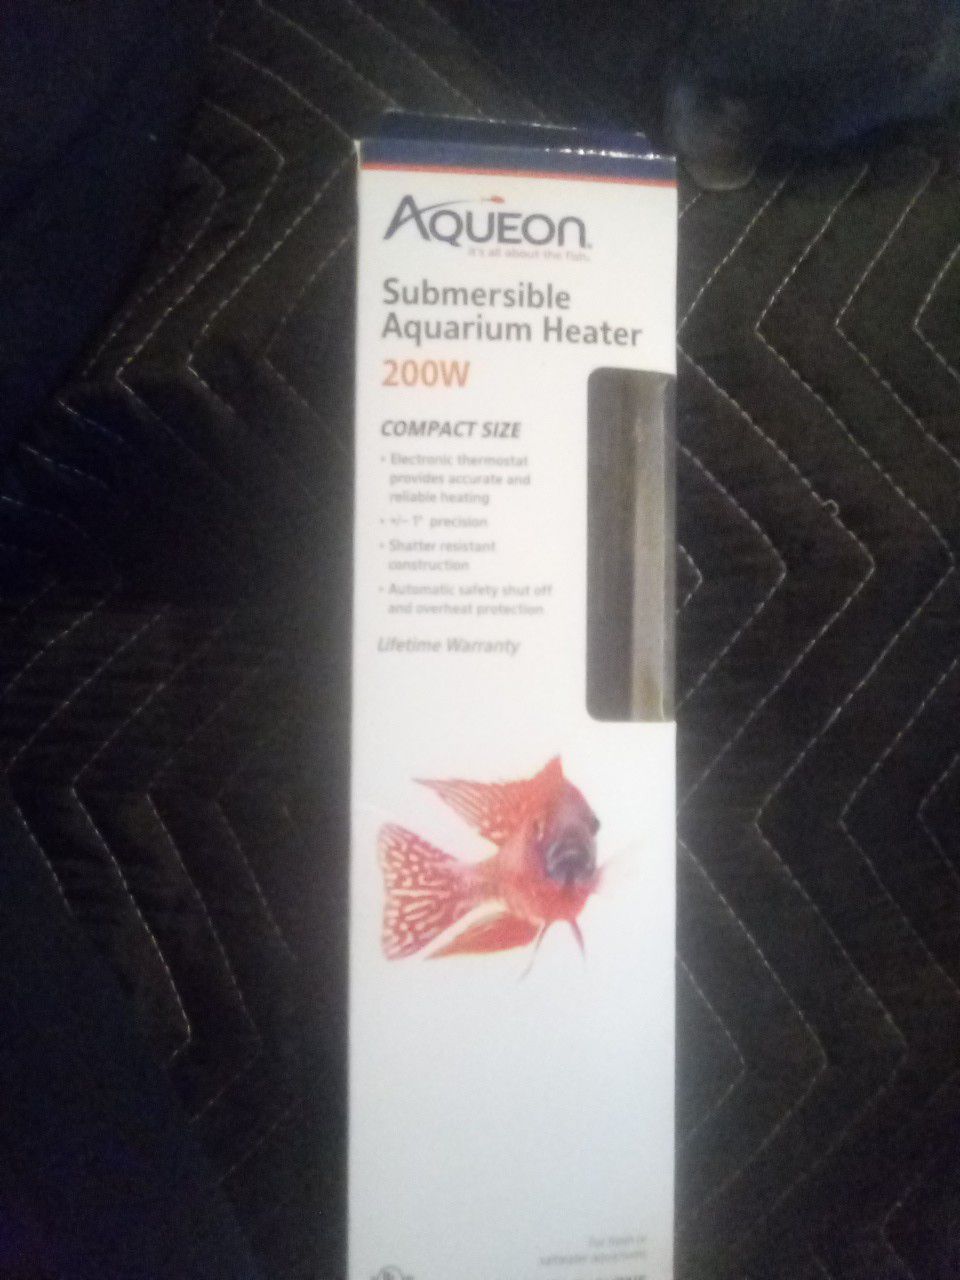 Aqueon submersible aquarium heater 200w